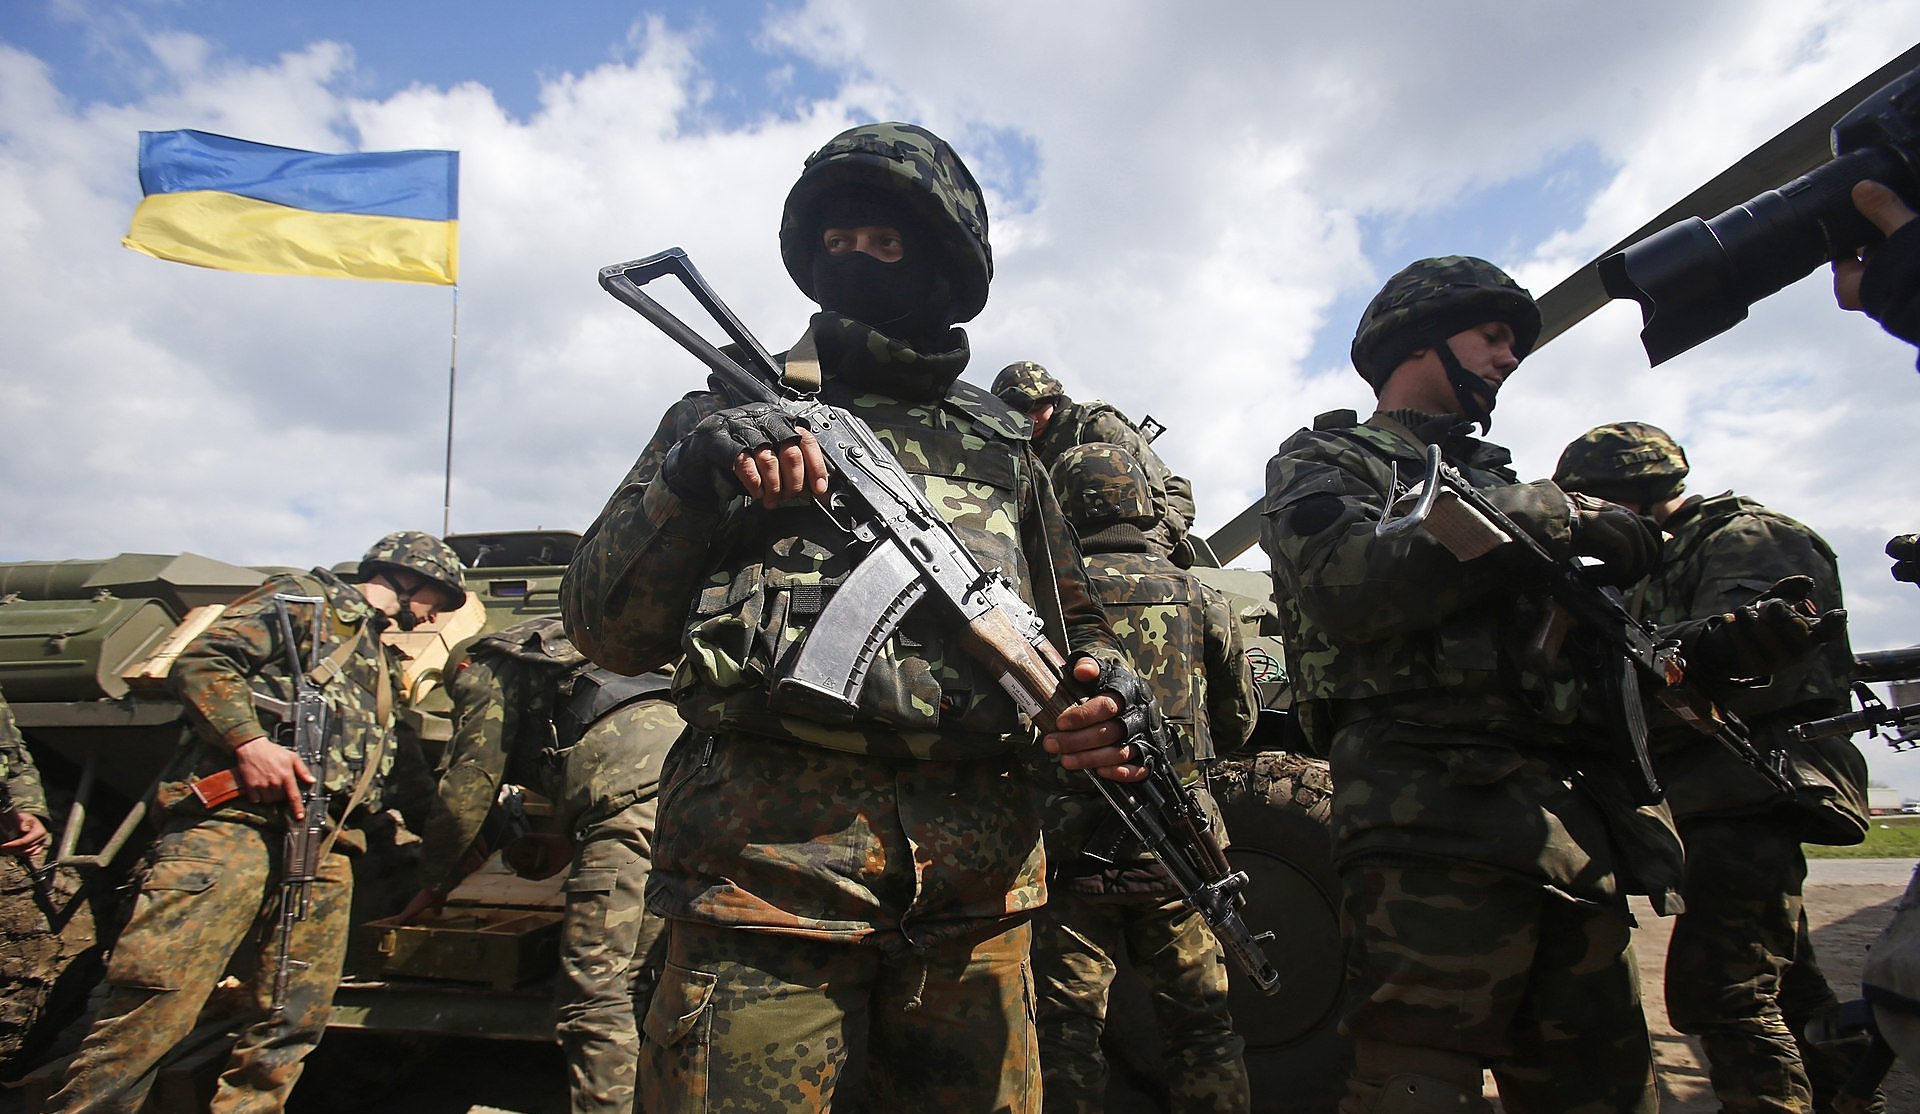 ДРГ сепаратистов "ДНР" в панике сбежала, получив отпор украинских воинов в Марьинке, - штаб АТО